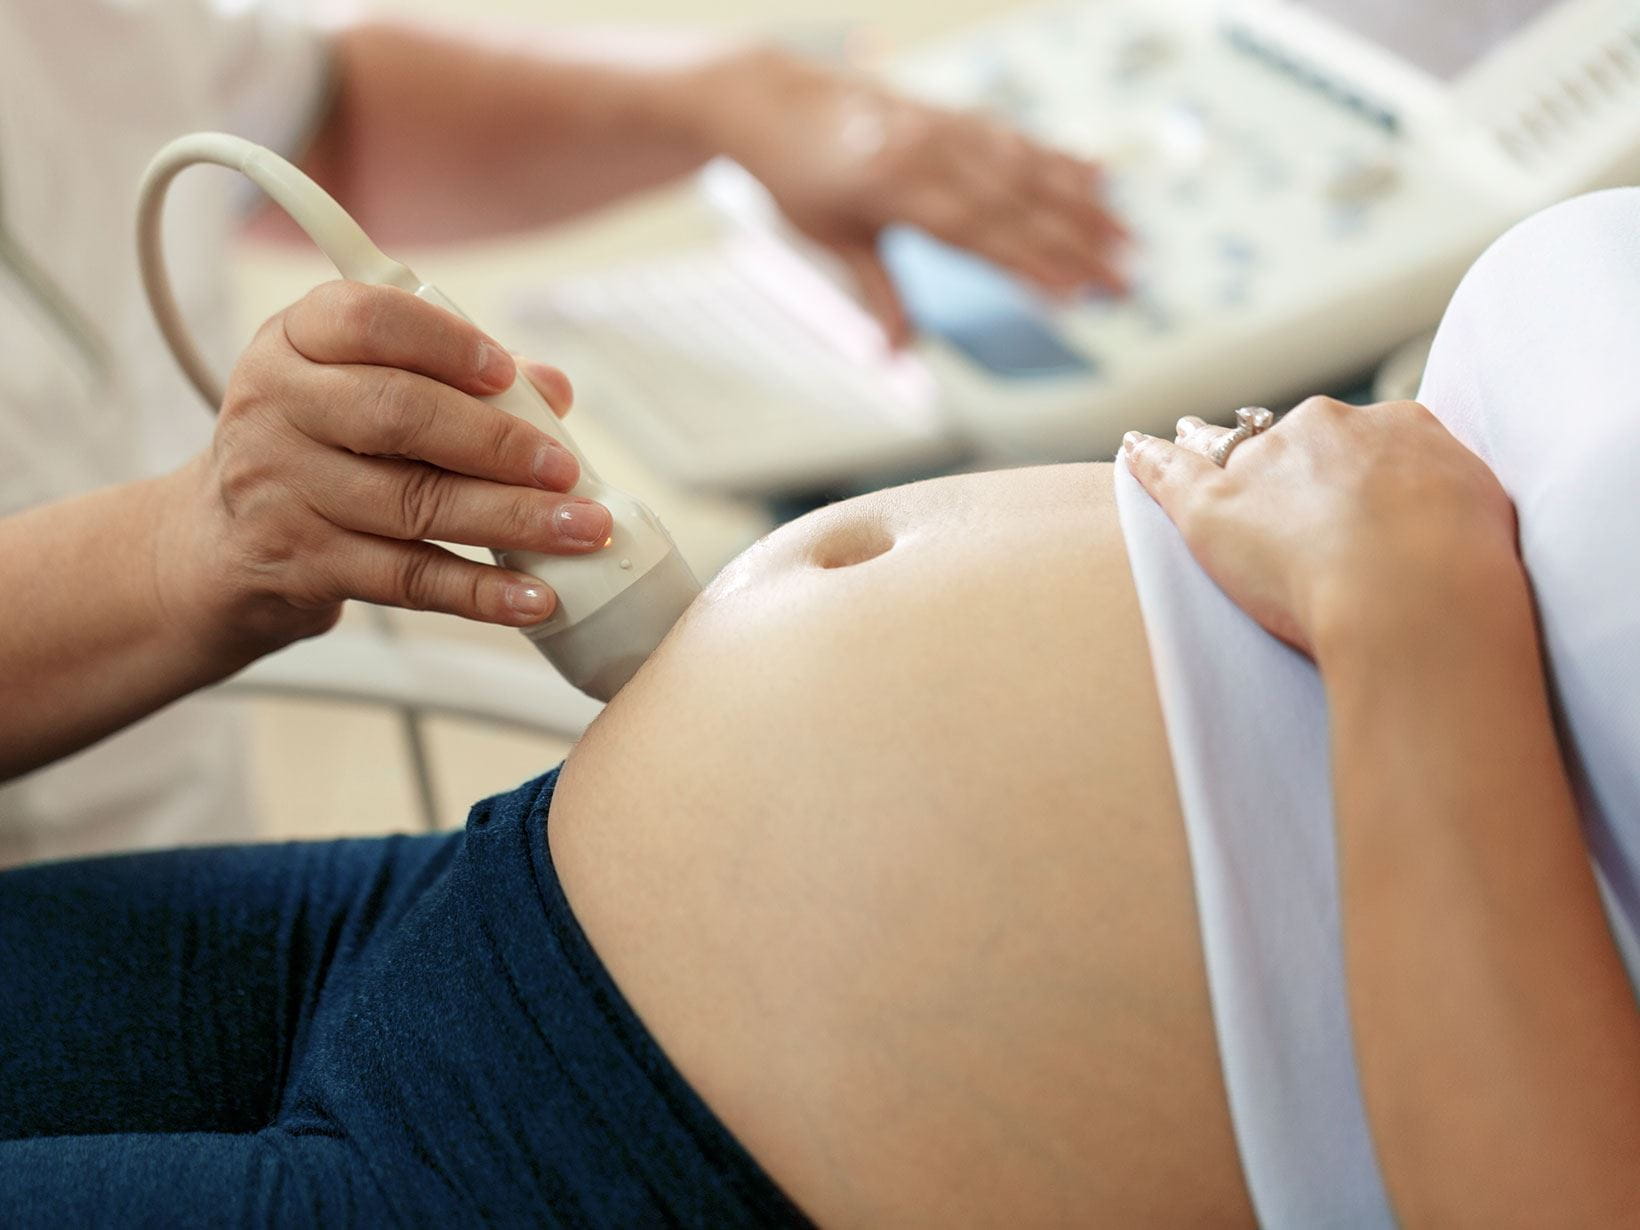 Ventre de femme enceinte a l'echographie